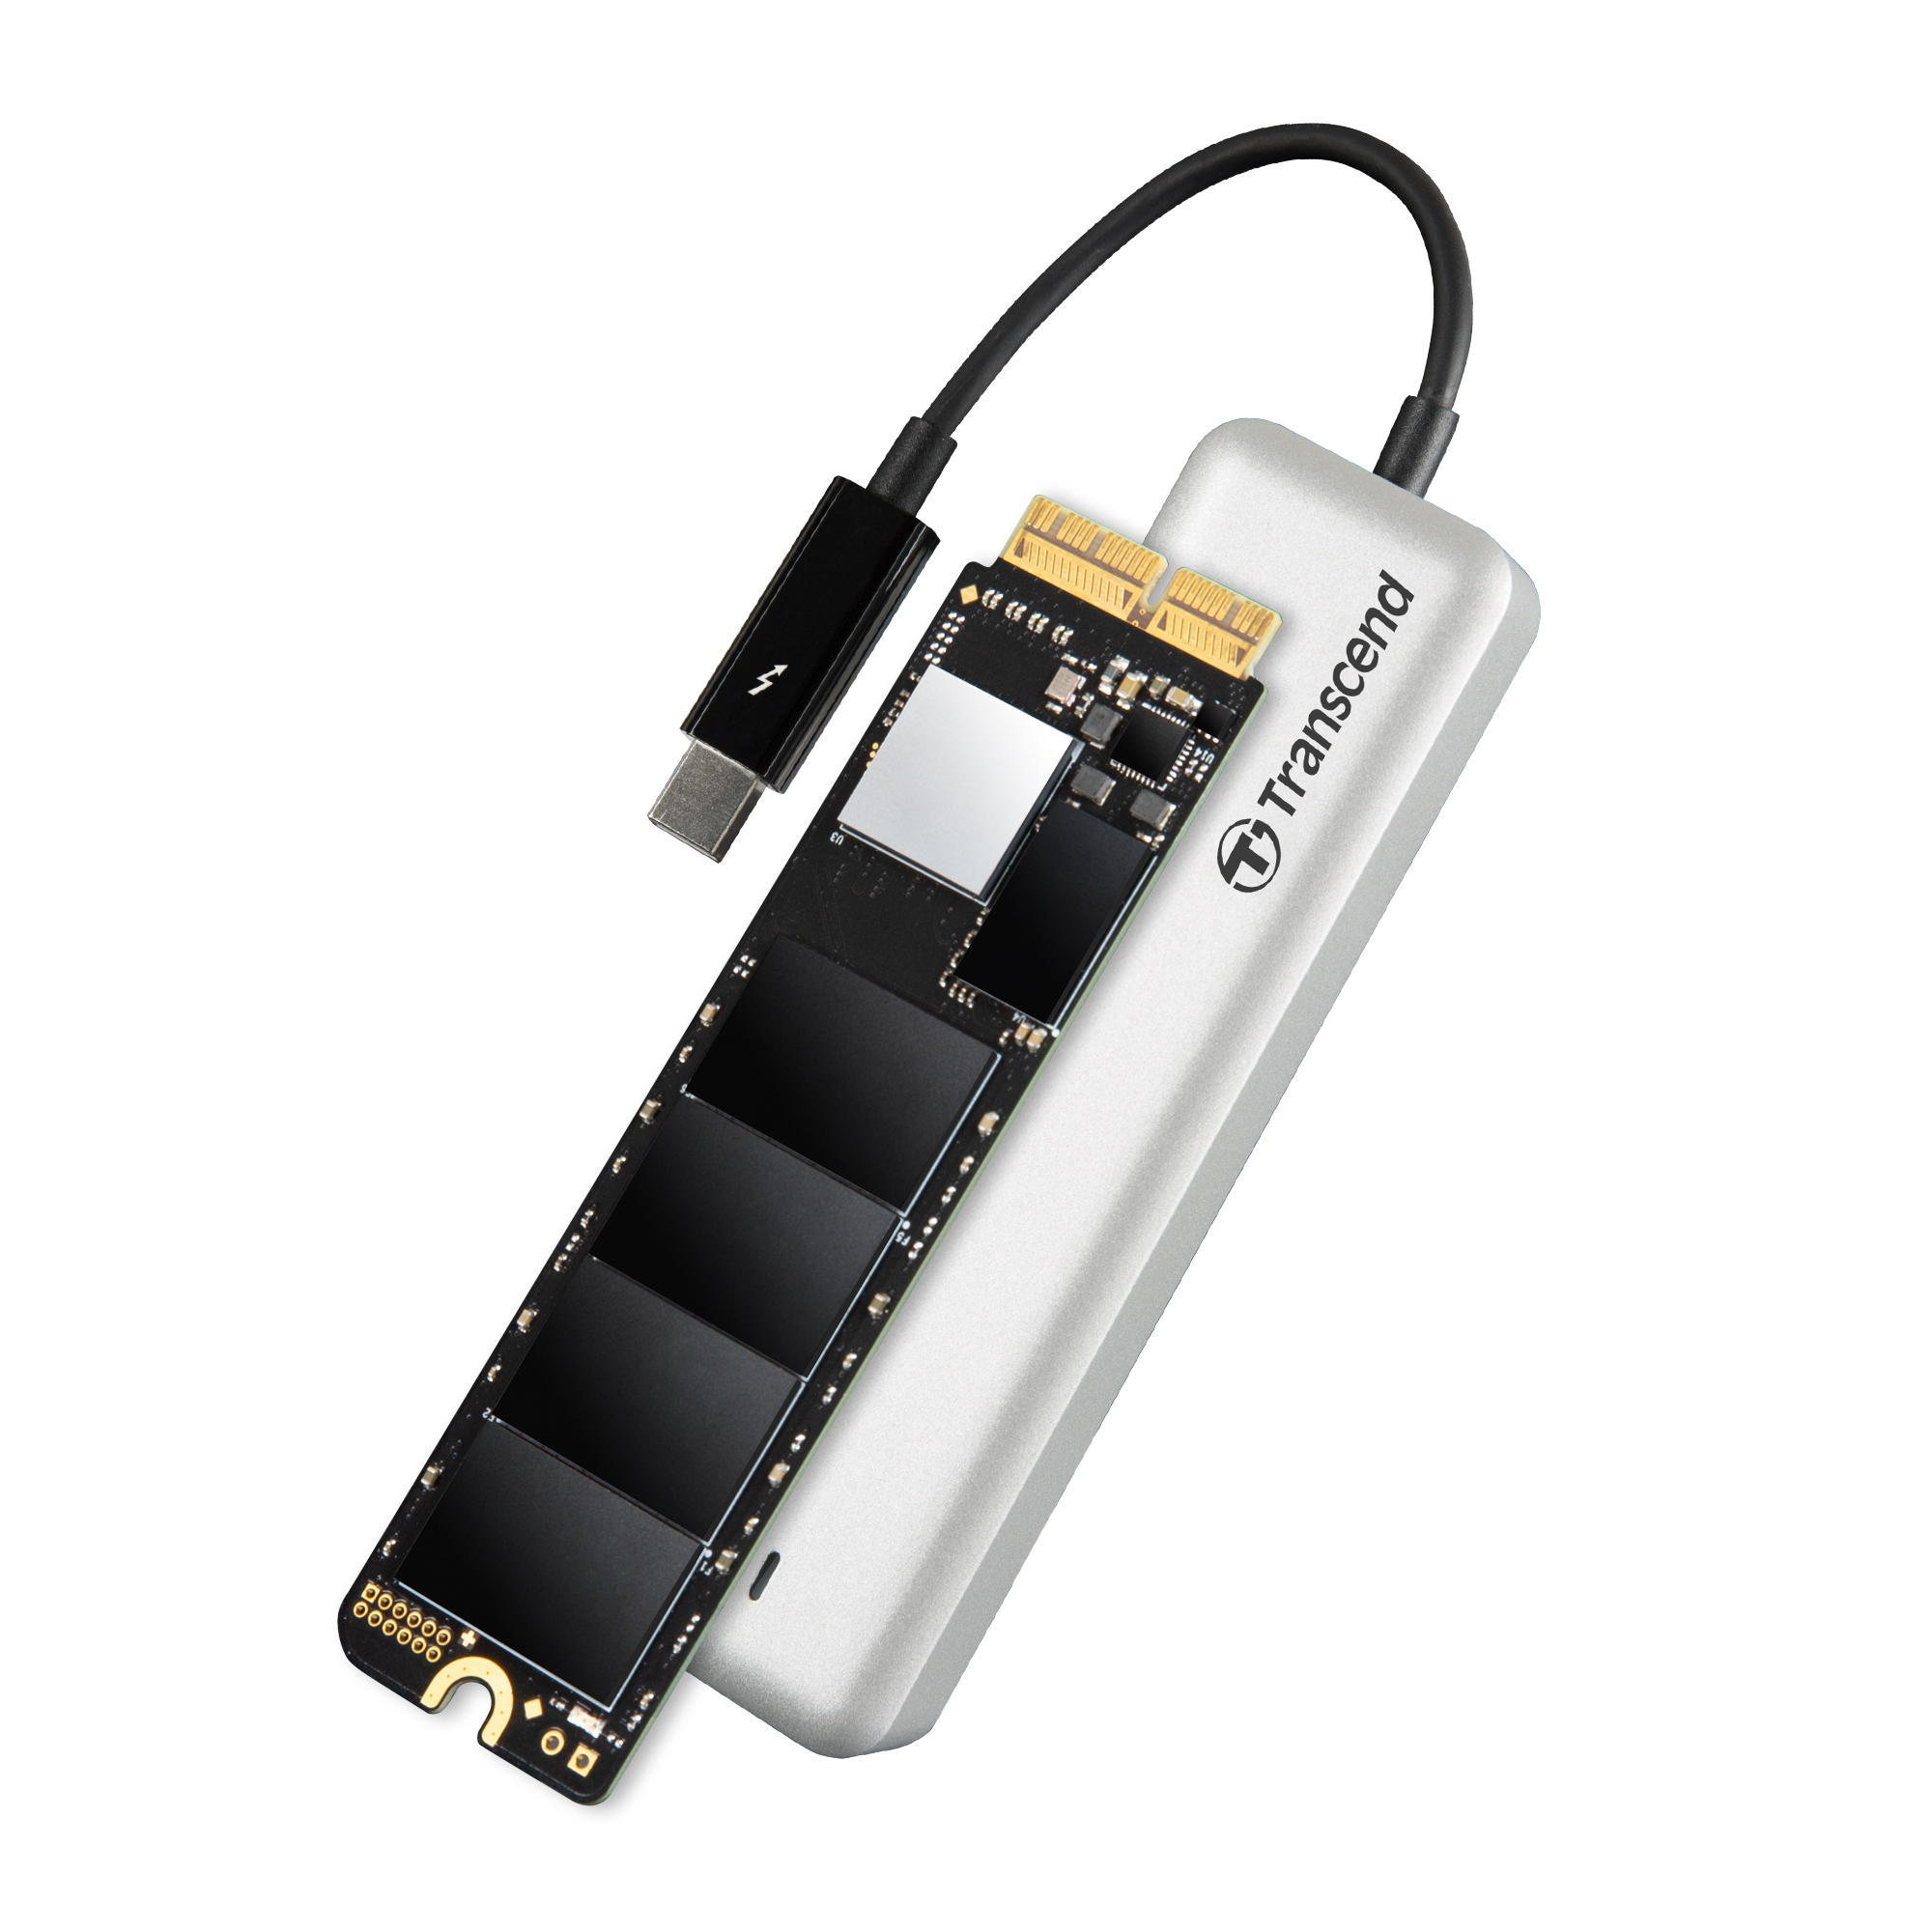 Mac專用SSD升級套件組-JetDrive™ 855 / 創見資訊股份有限公司